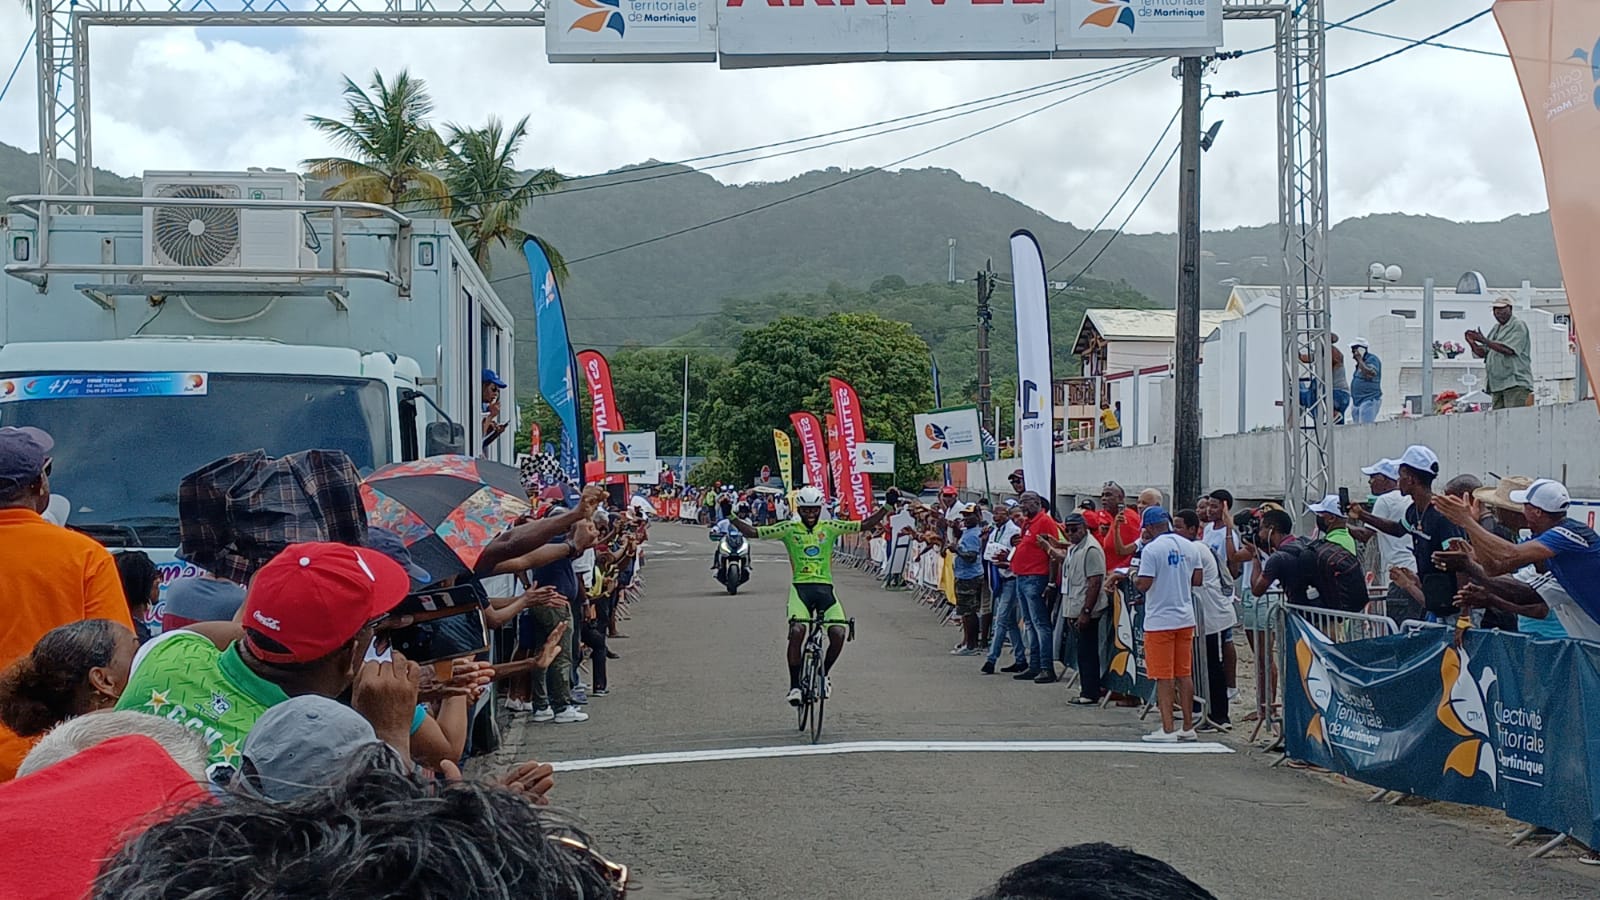     Joseph Areruya remporte la première étape du tour cycliste de Martinique

